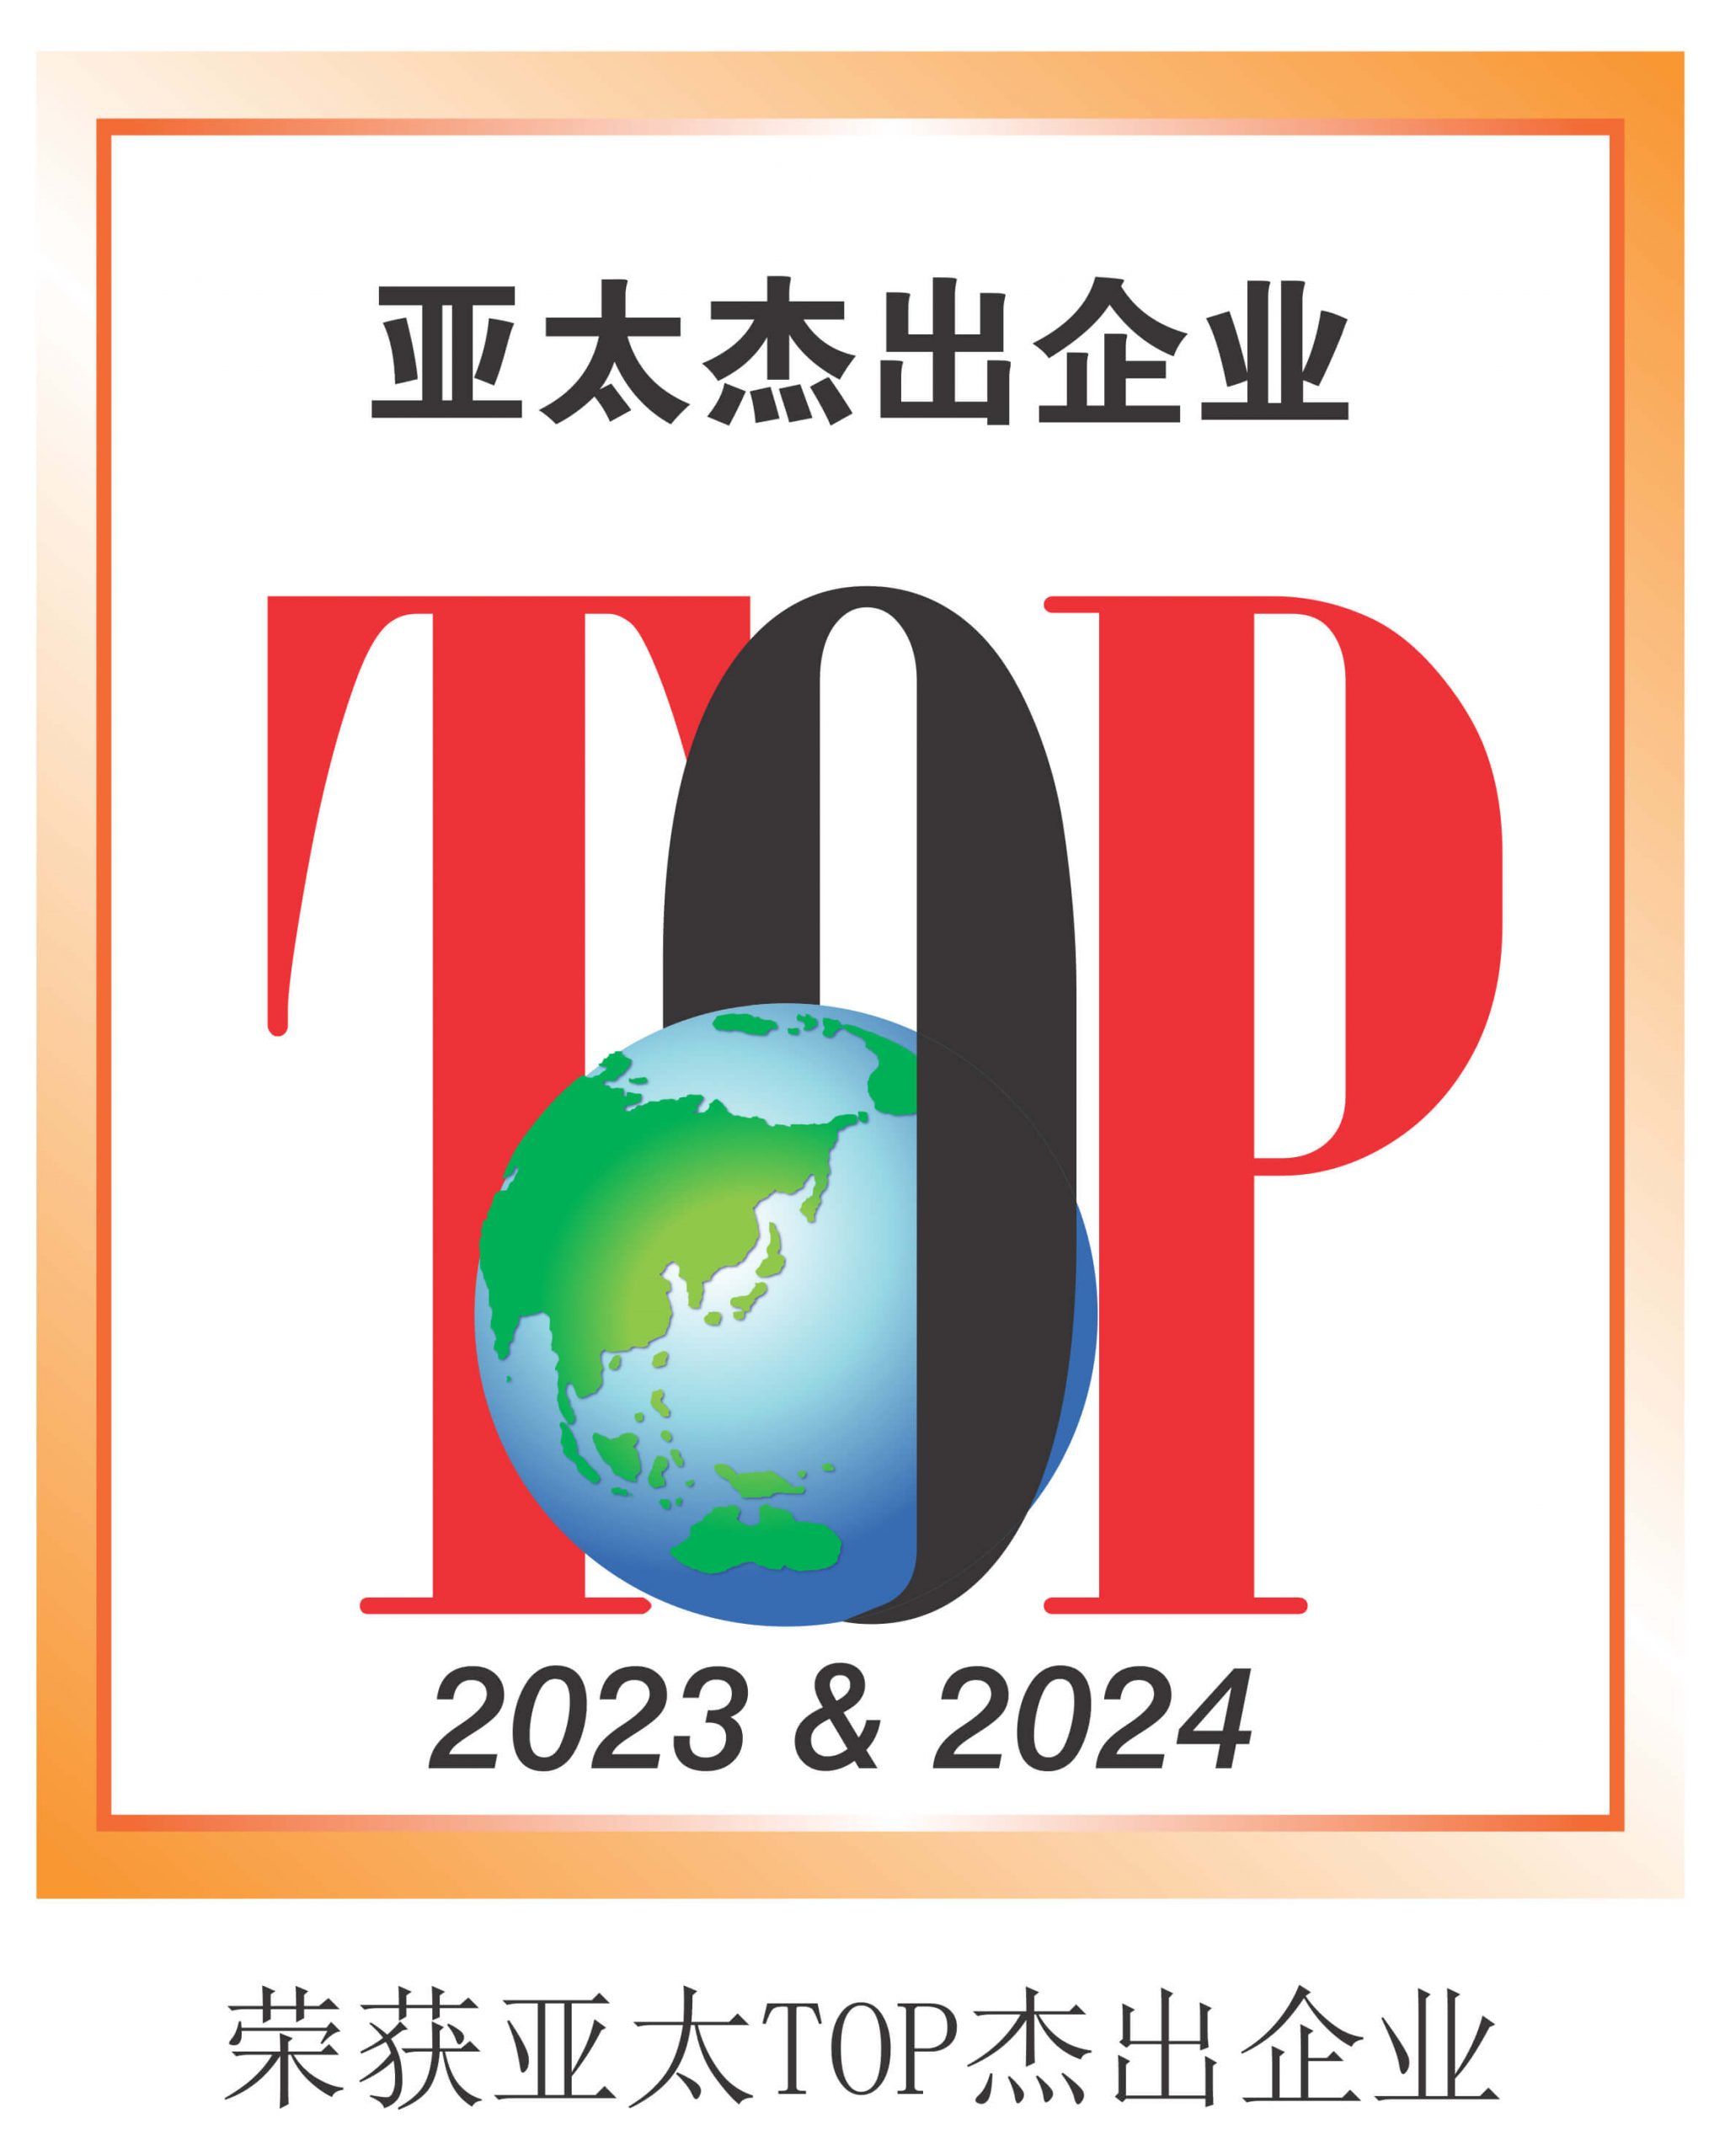 亚太TOP杰出企业-_2023_2024